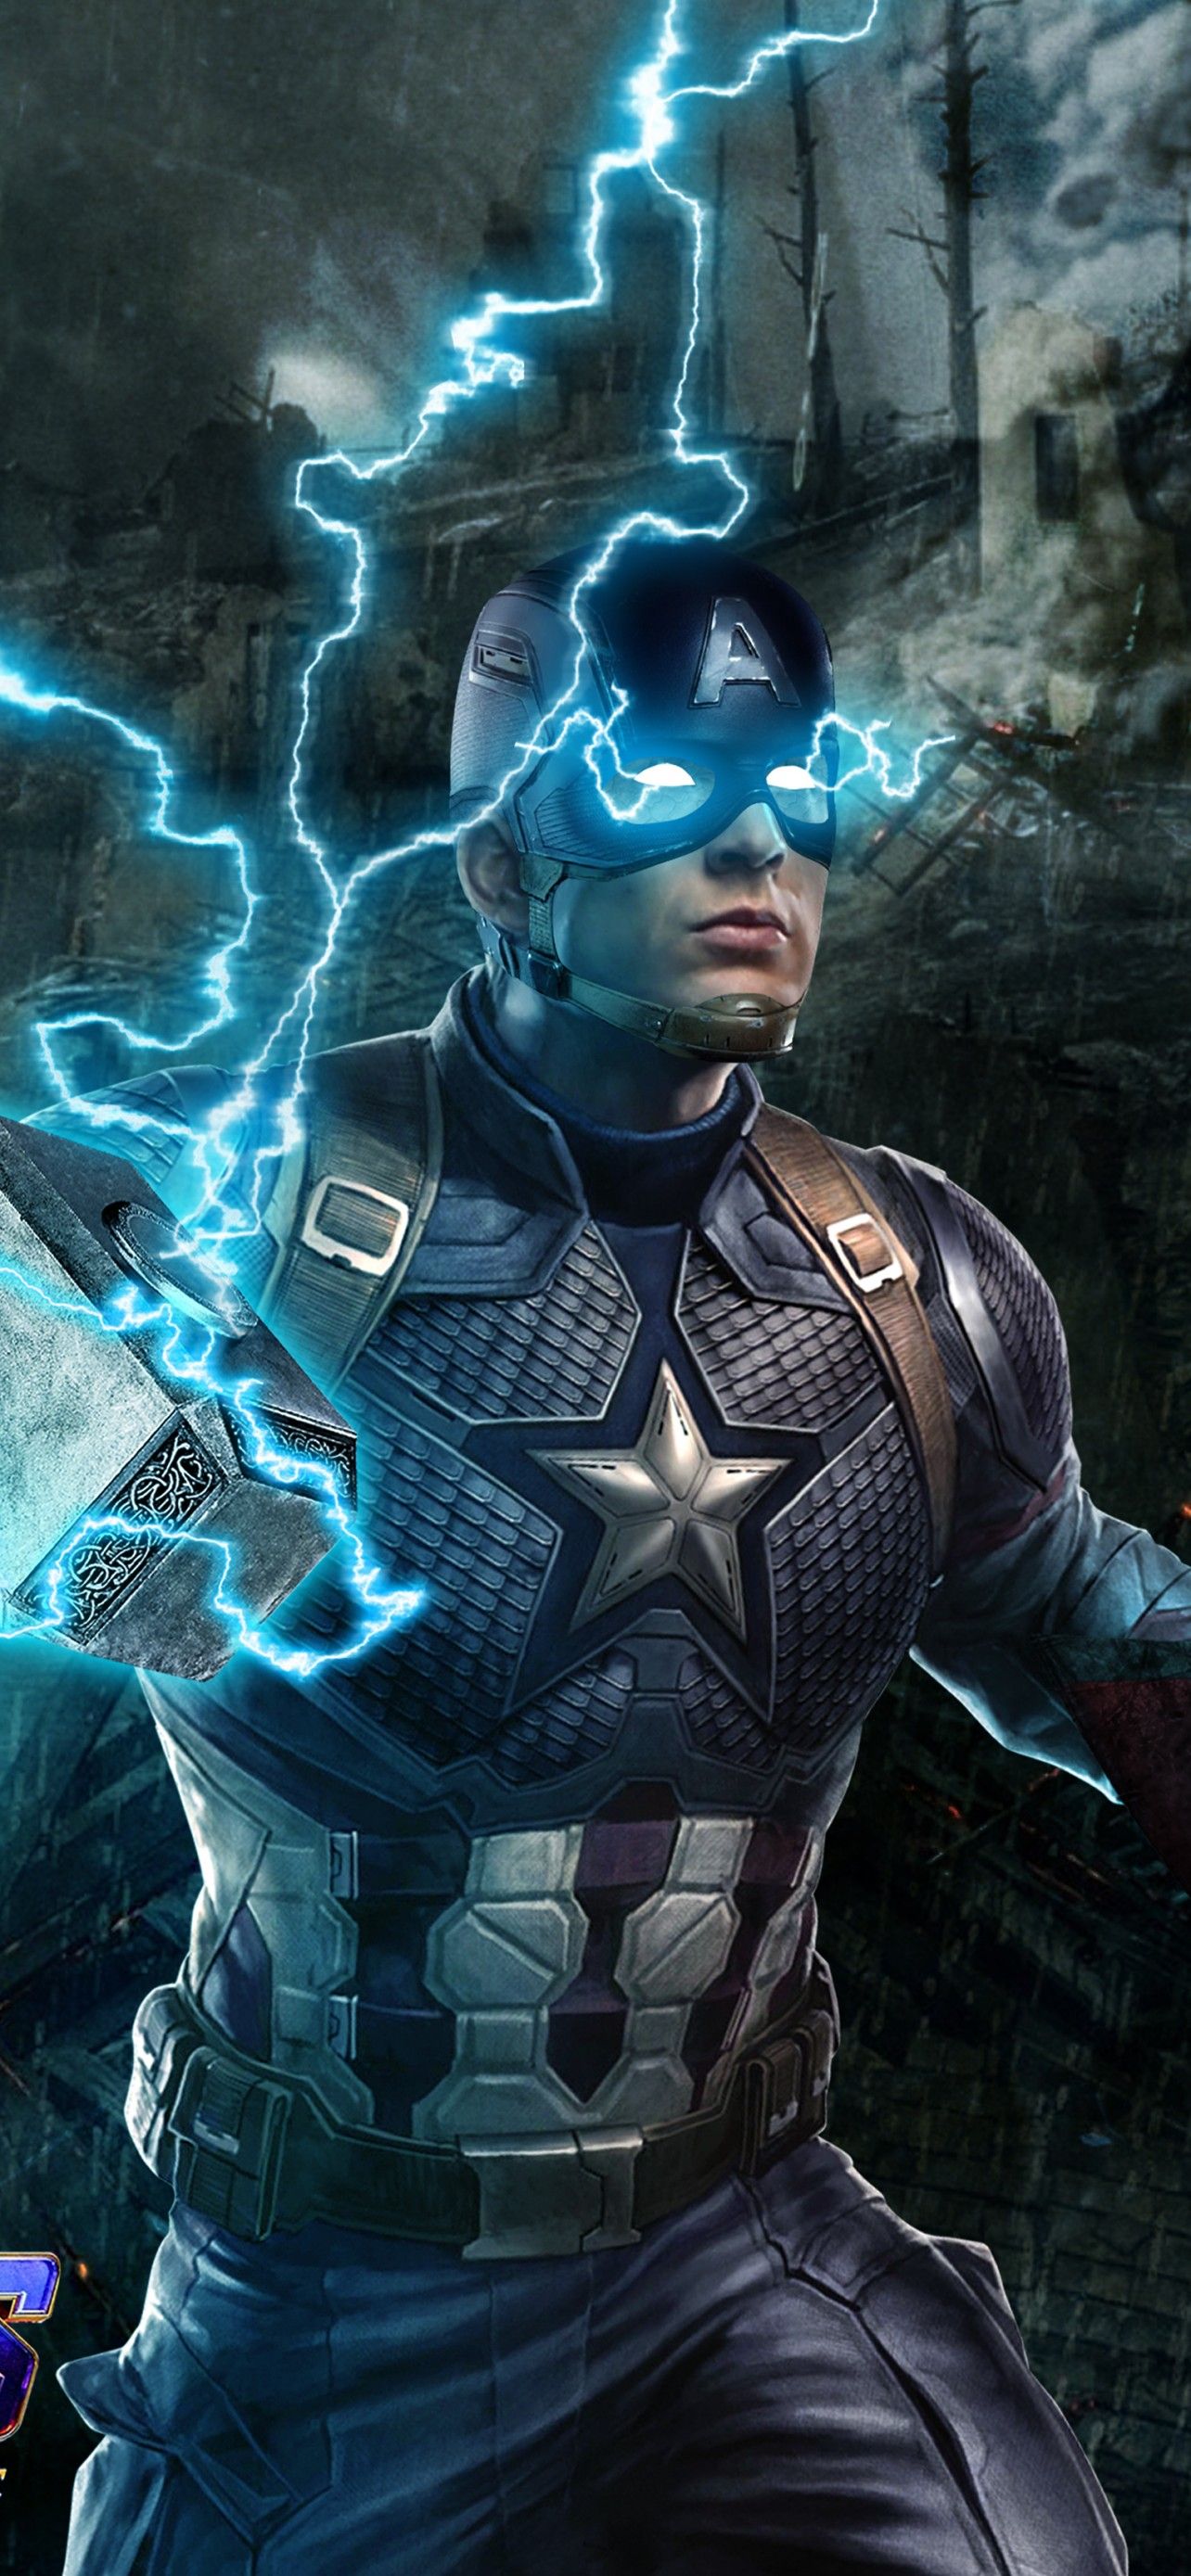 Captain America 4K Wallpaper, Avengers: Endgame, Worthy, Thor's hammer, Mjolnir, Movies